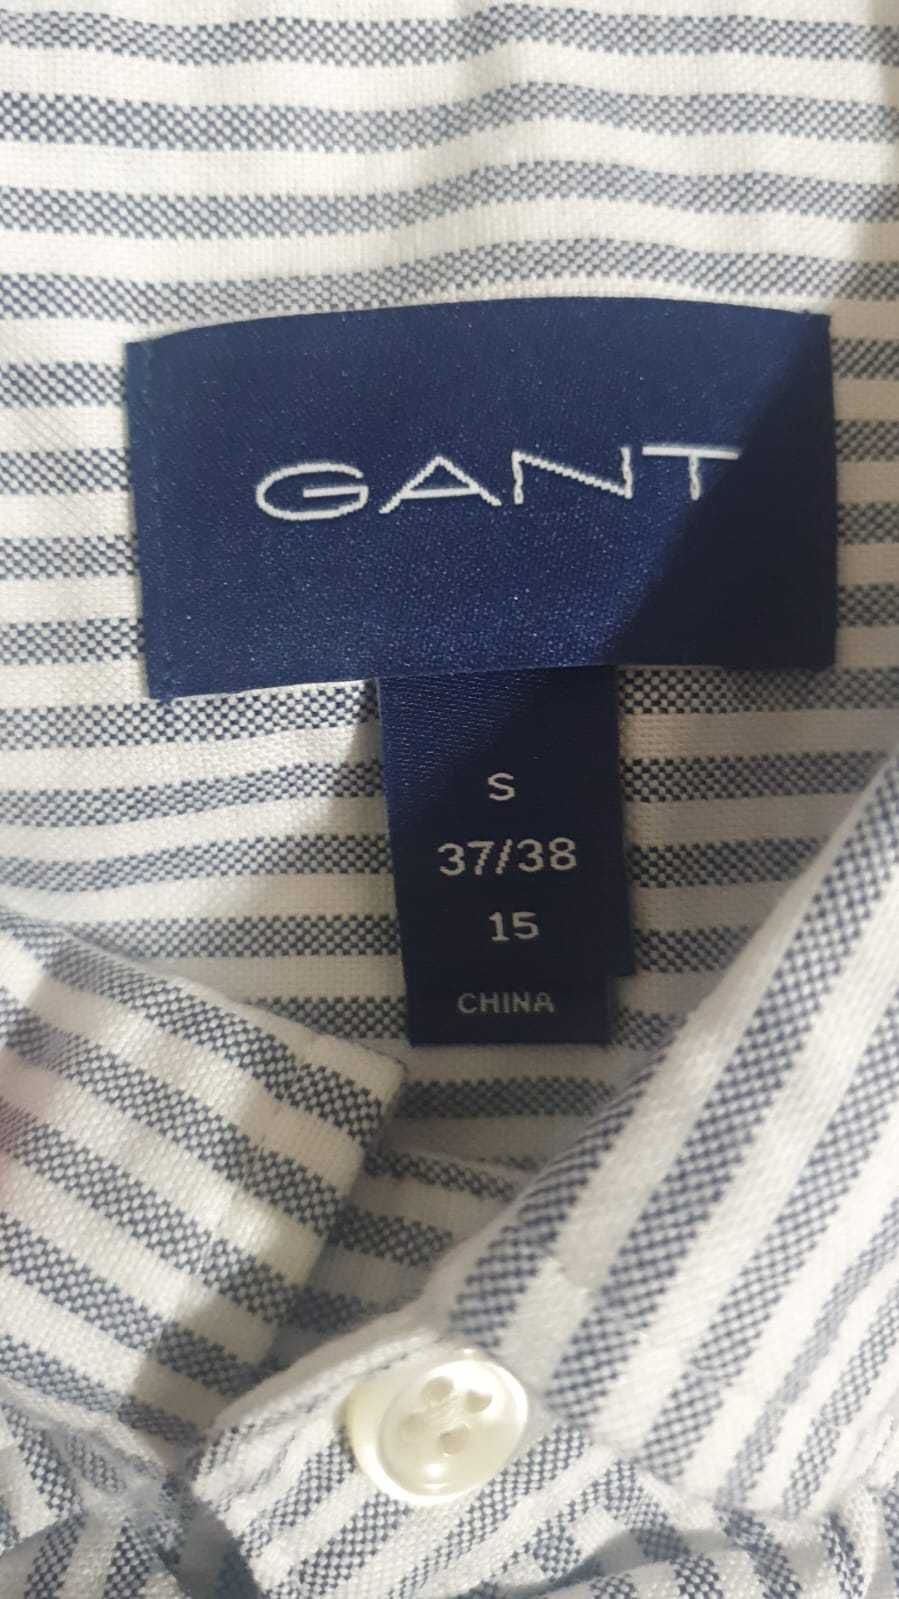 Vand camasa barbat Gant masura S originala noua cu eticheta